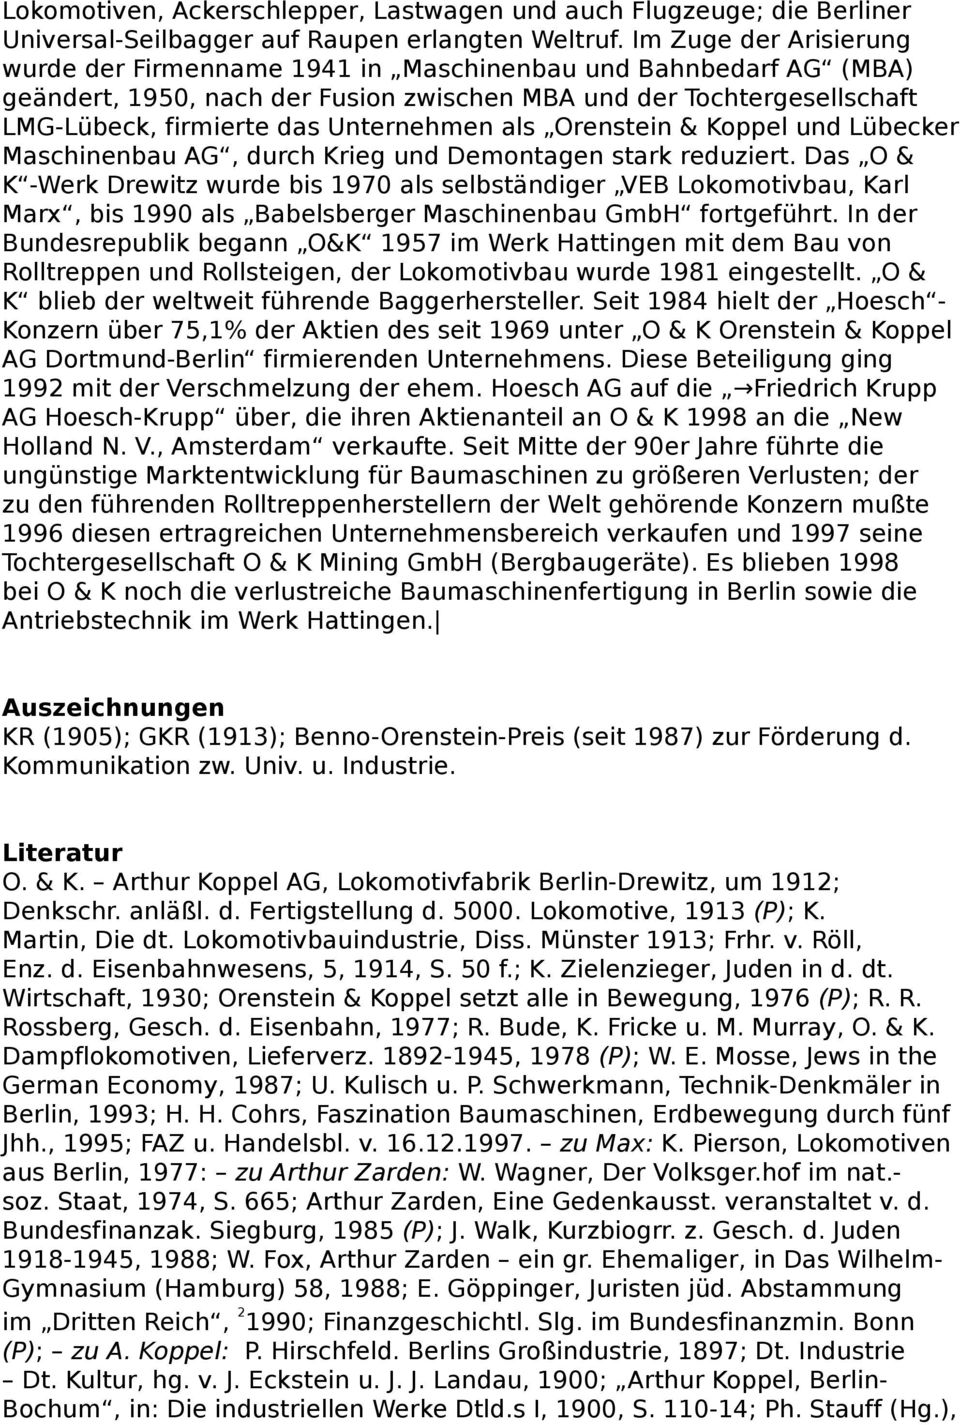 als Orenstein & Koppel und Lübecker Maschinenbau AG, durch Krieg und Demontagen stark reduziert.